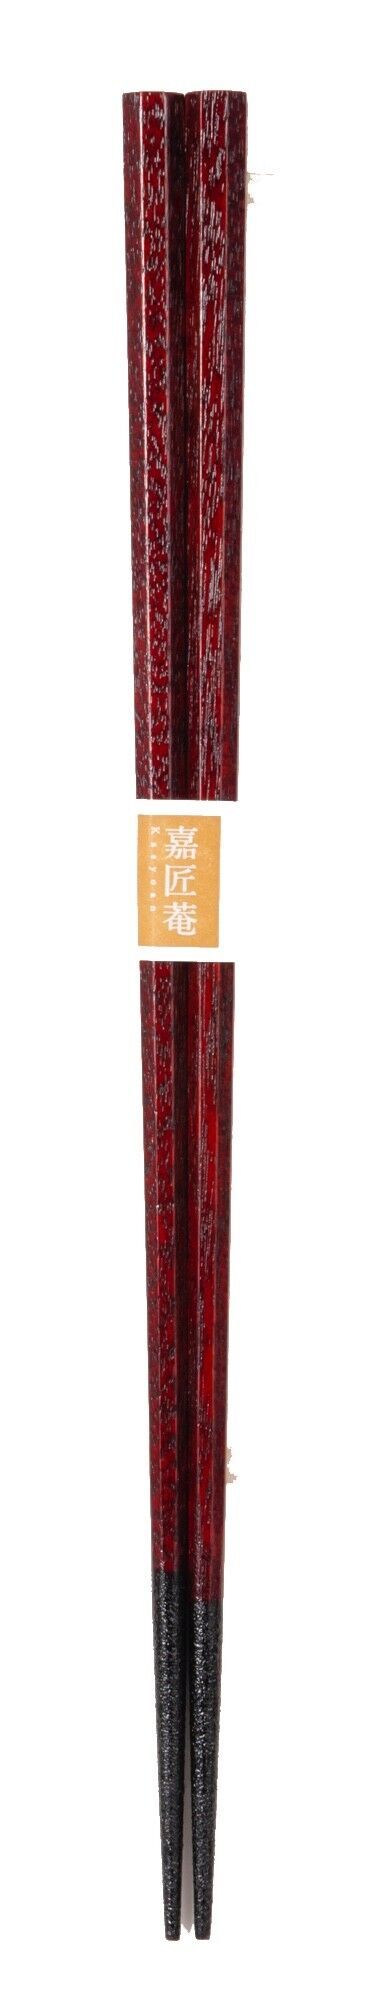 F-0770 Yamanakanuri-Domestic Chopsticks, Hachikaku Chopsticks by Shoji Kuboze, Traditional Craftsman, Akazuri (with a slip stop)